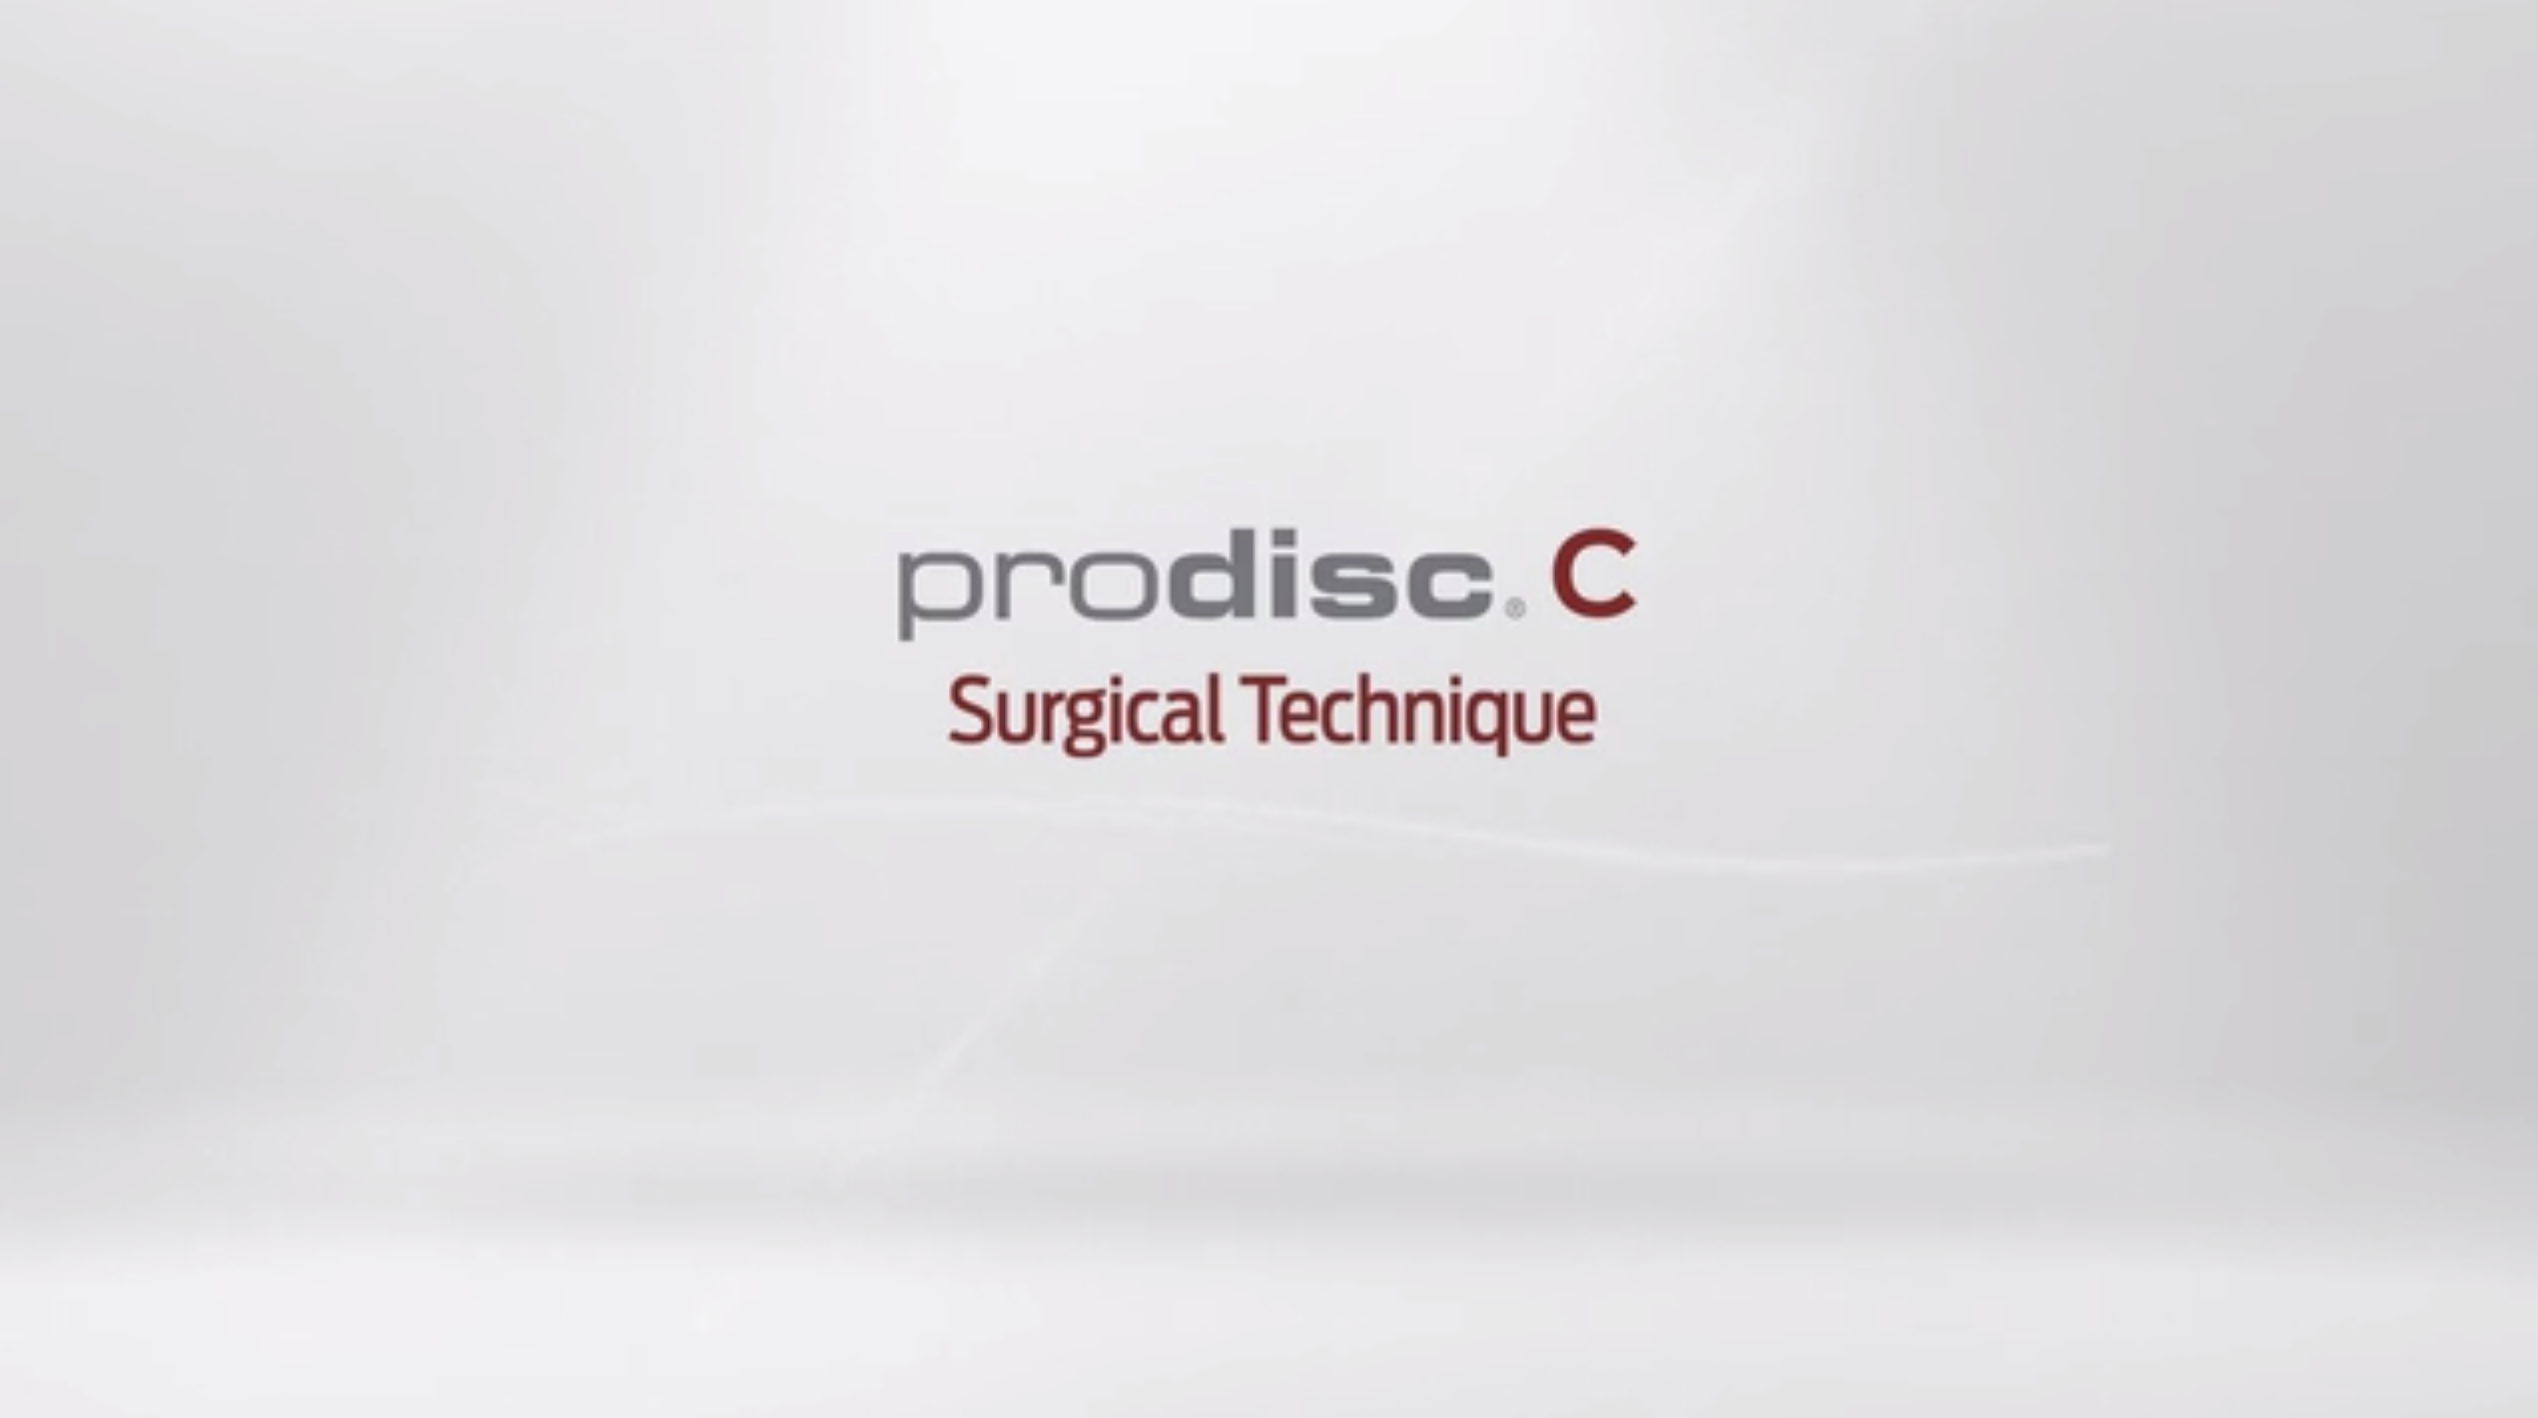 Prodisc C Surgical Technique